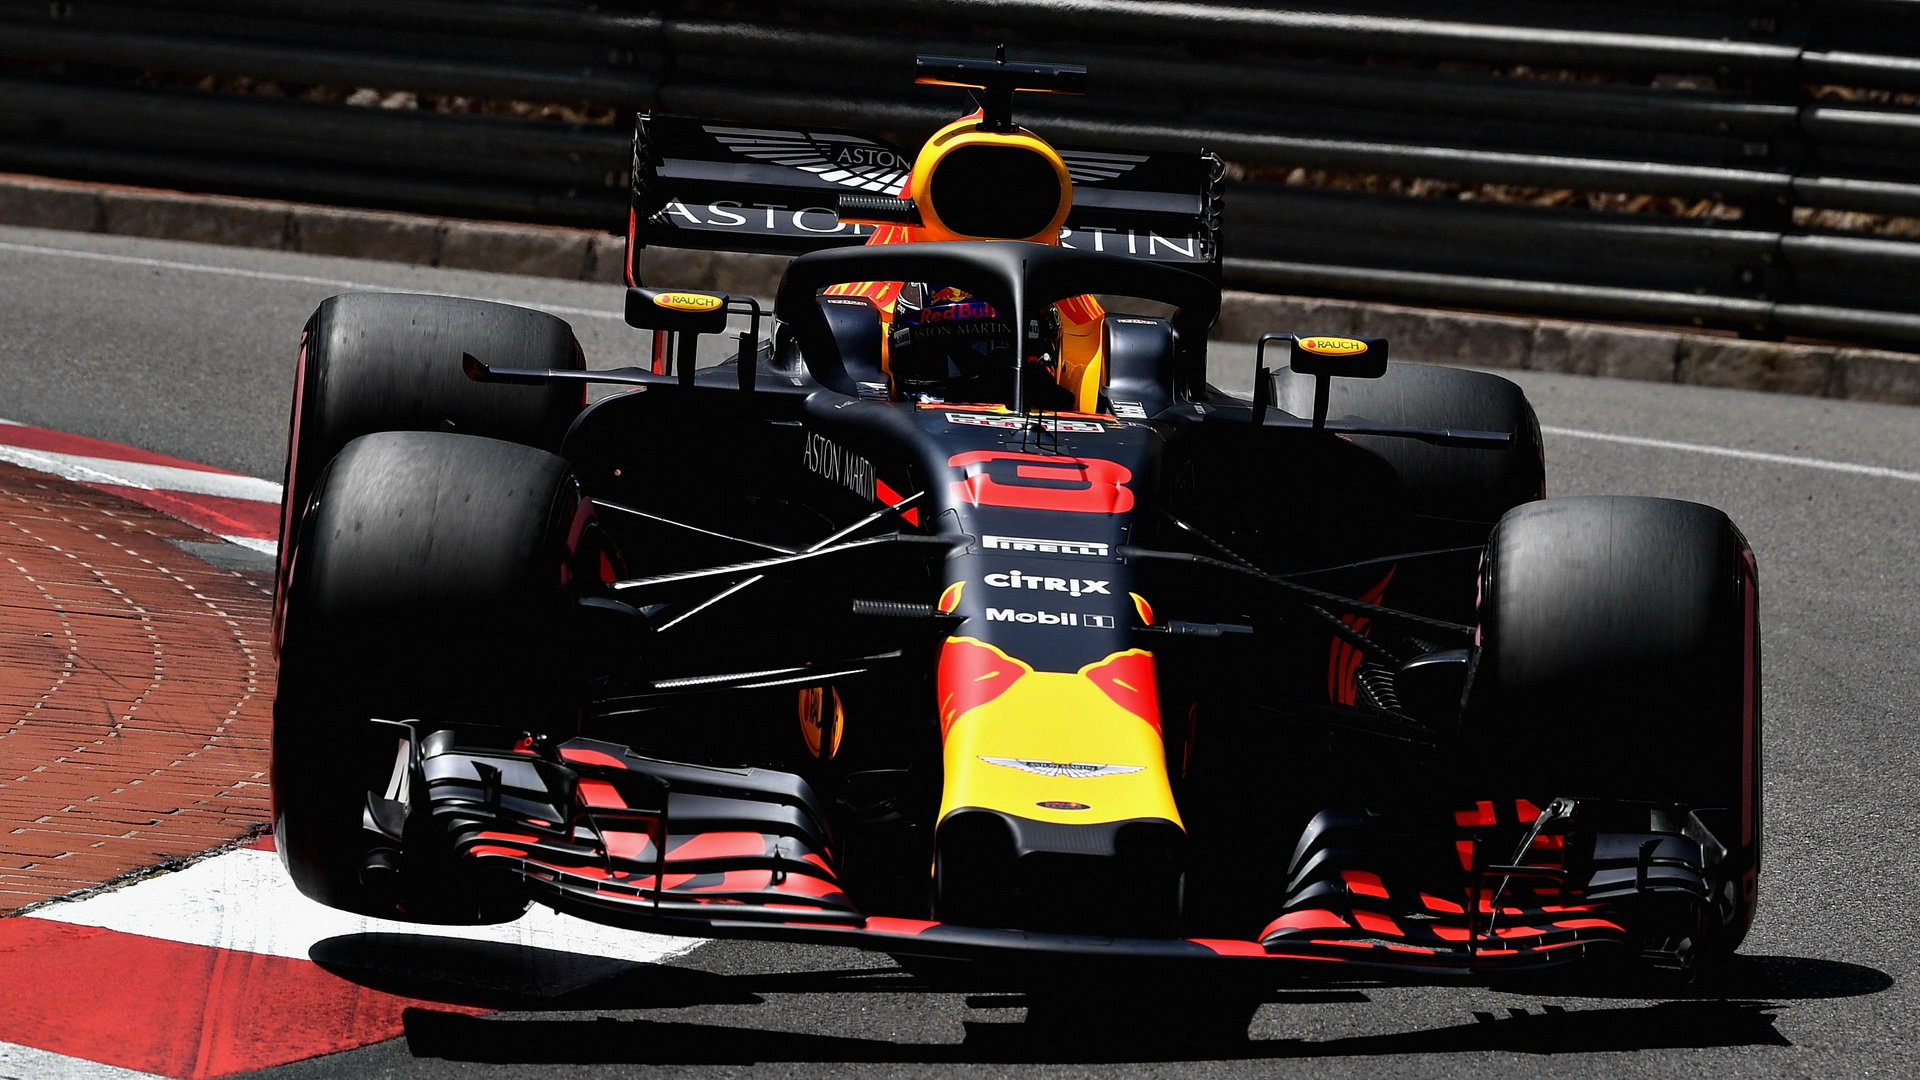 Zatímco Max Verstappen pokračoval v chybách, Daniel Ricciardo ovládl víkend v Monaku. Bude v tom pokračovat i v Montrealu?